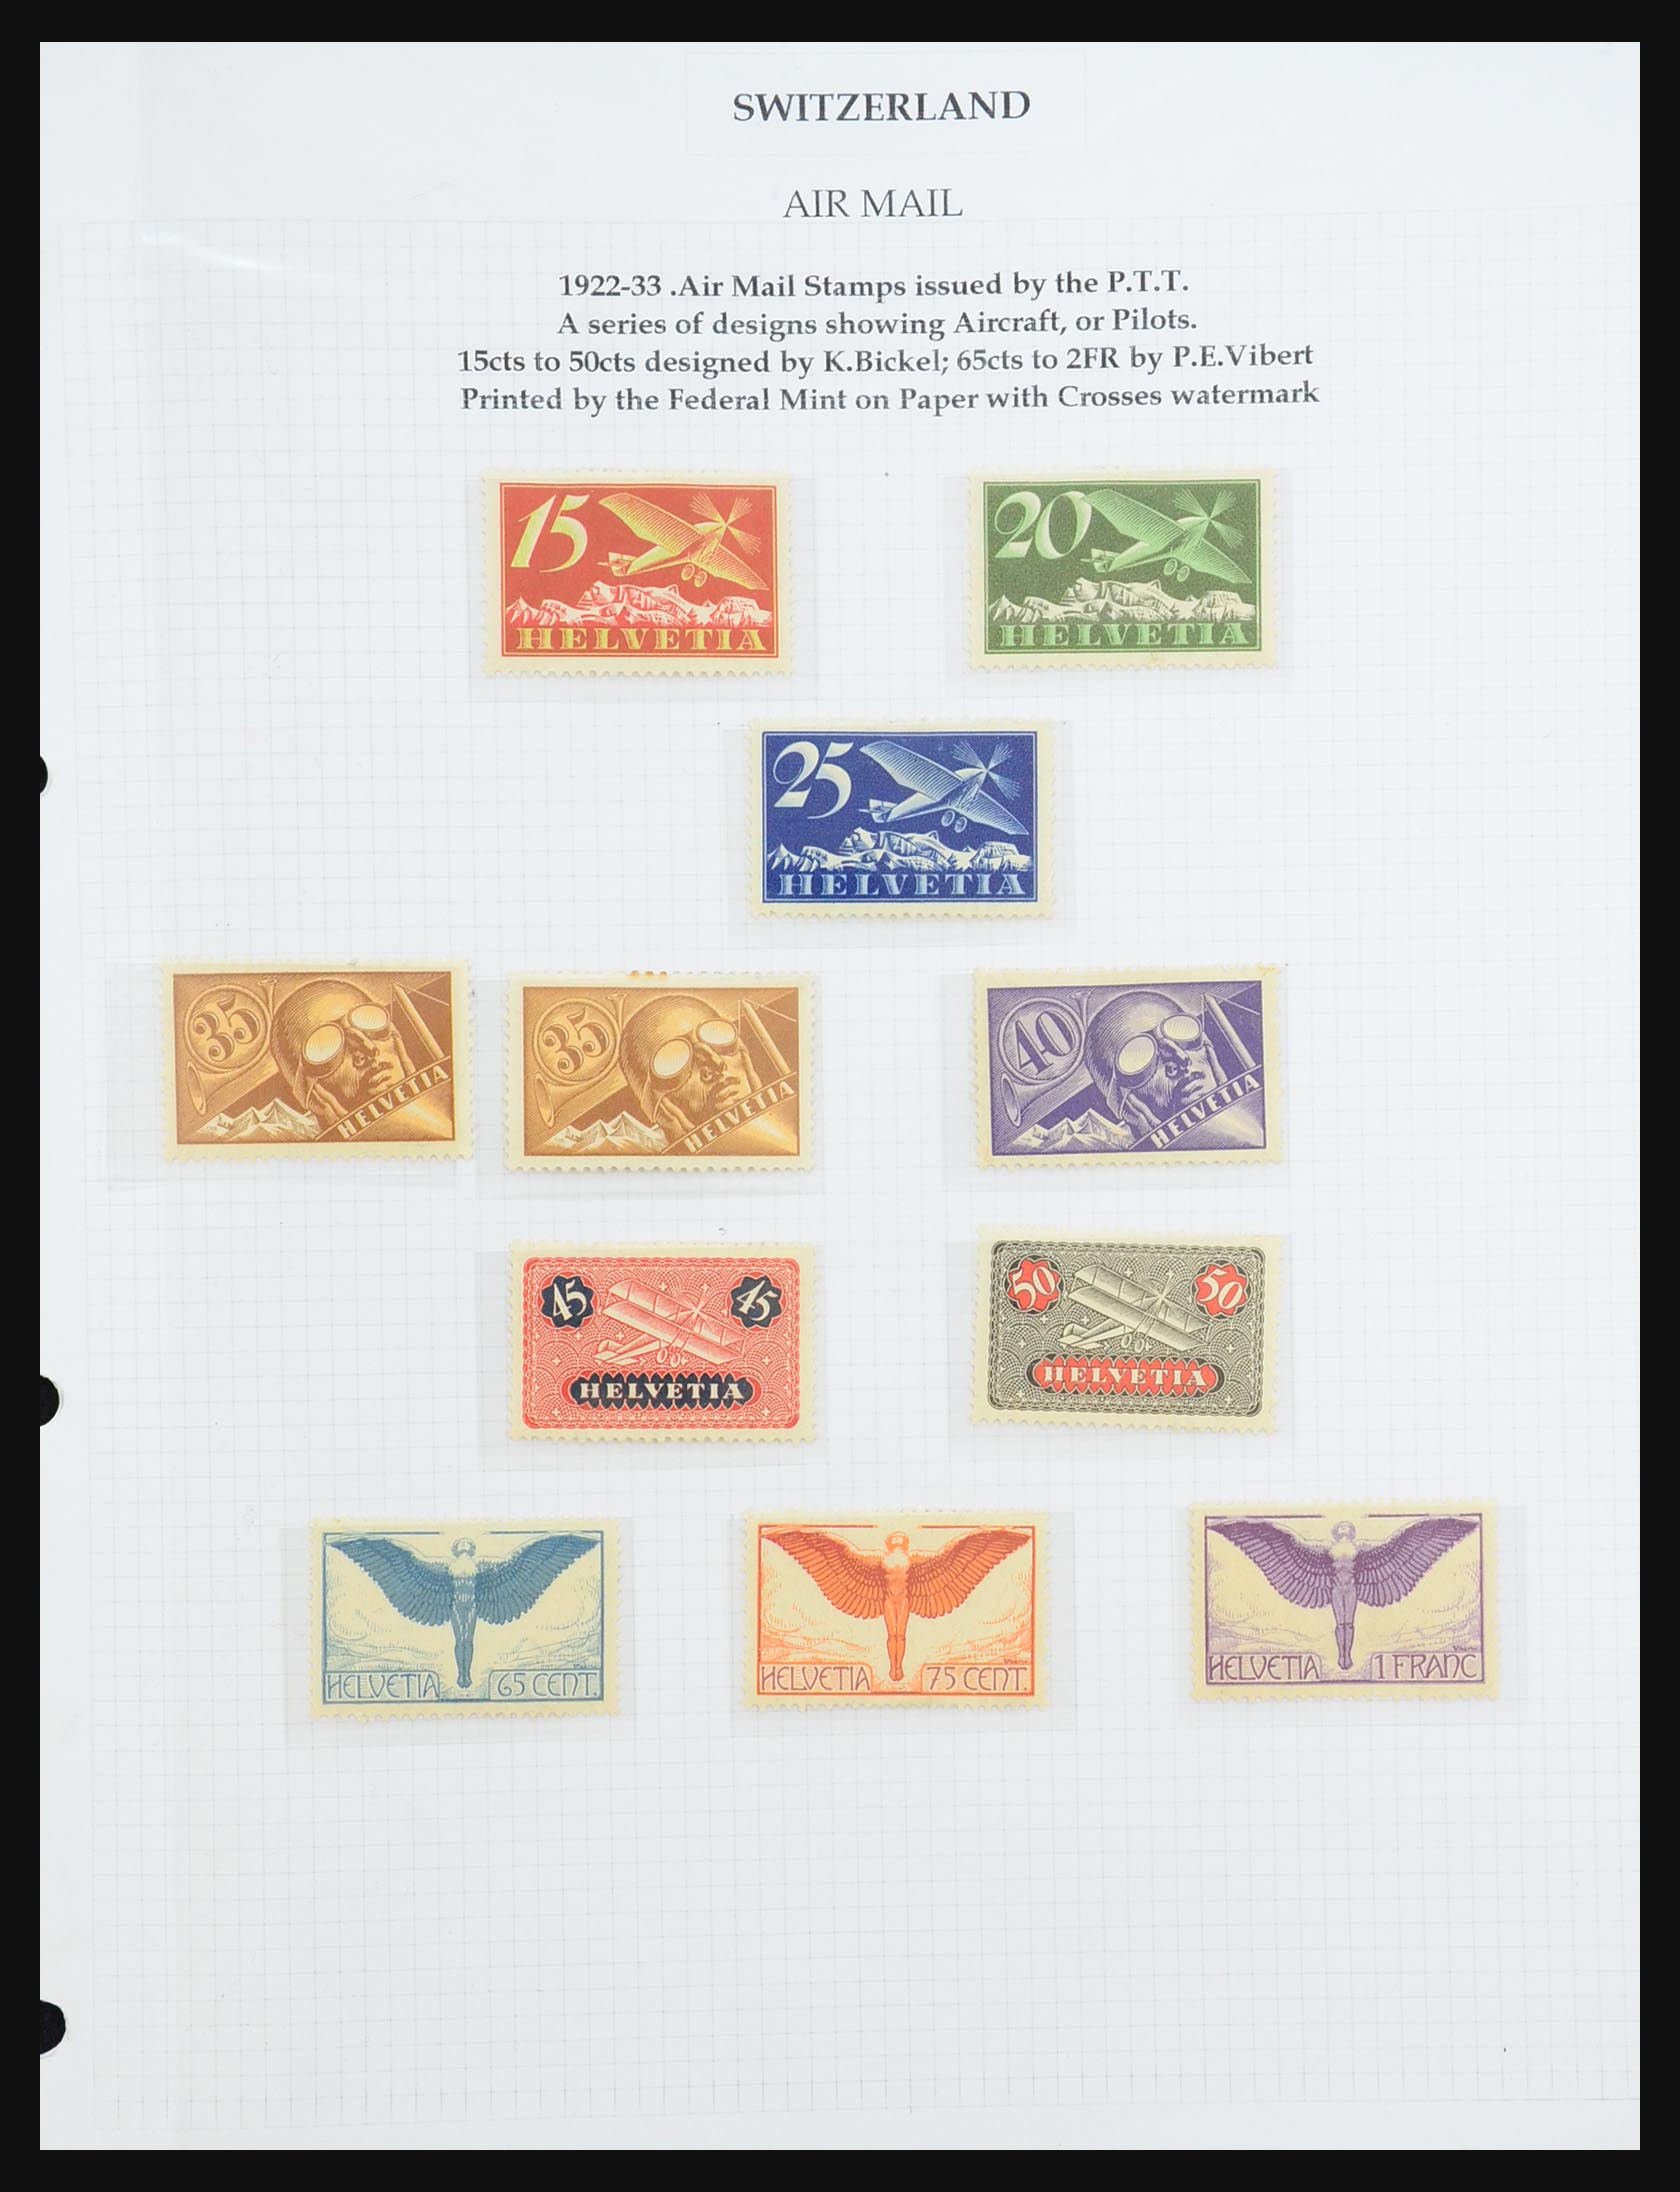 31444 001 - 31444 Switzerland airmail covers 1922-1946.